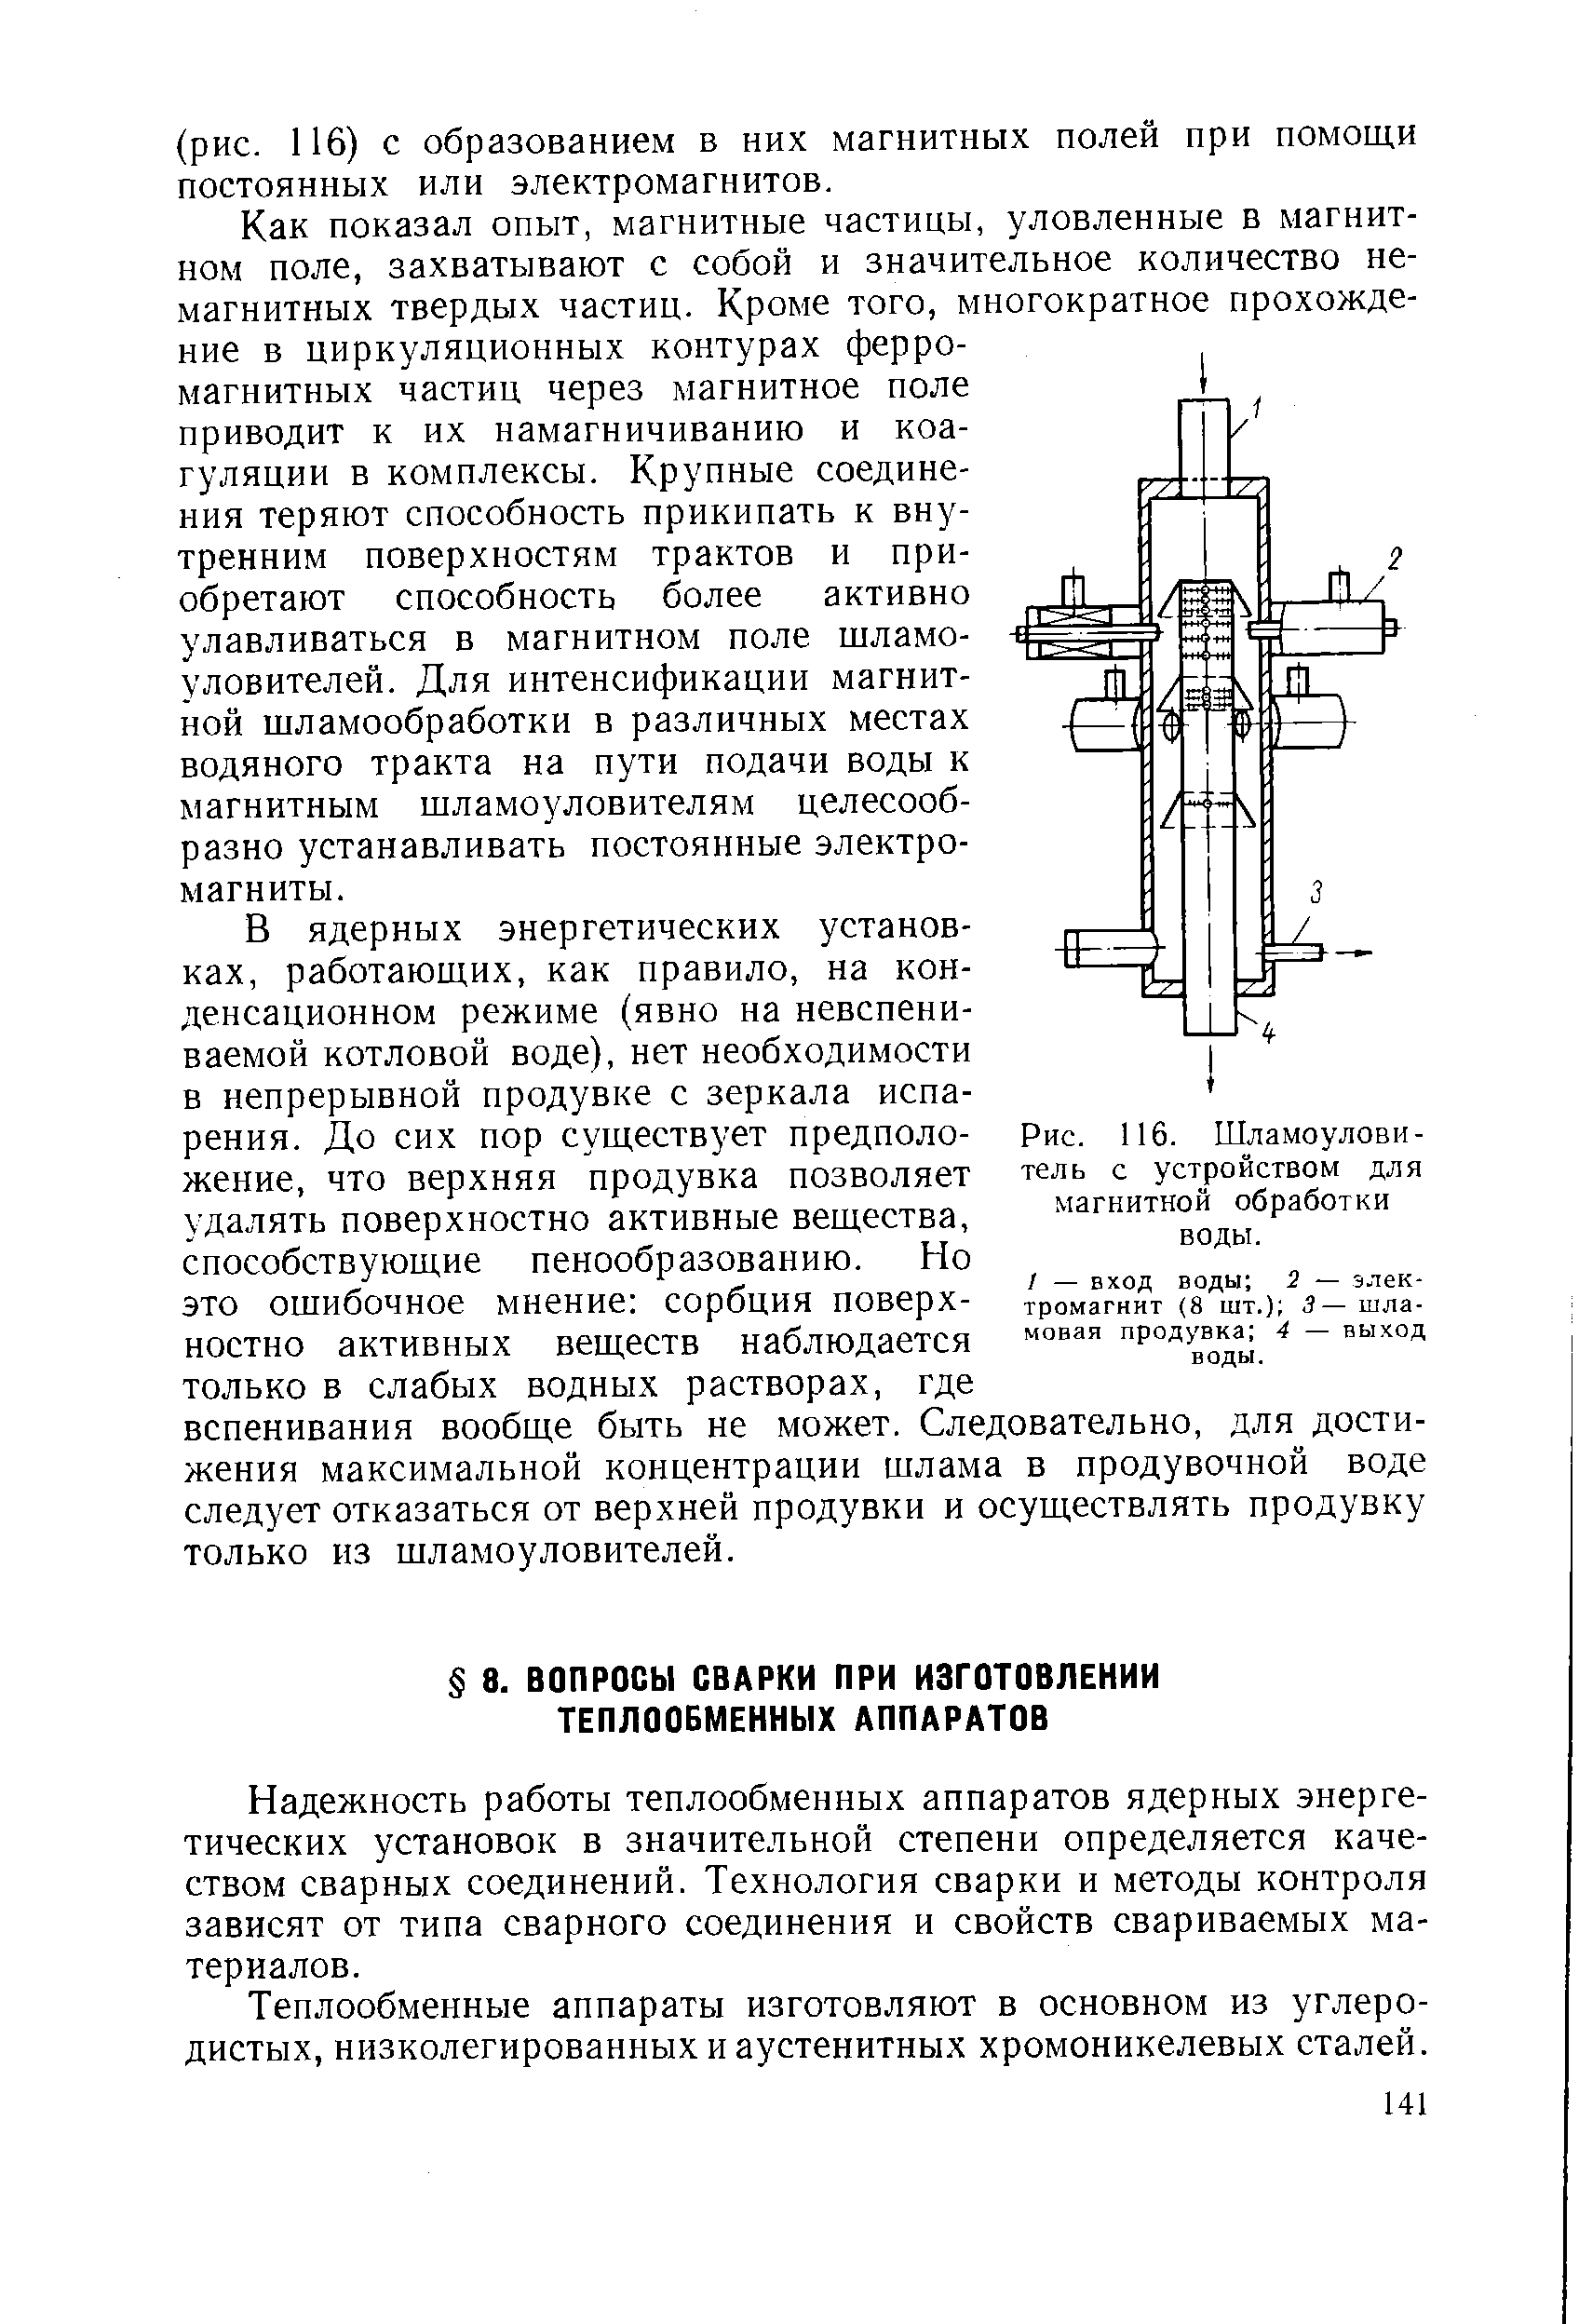 Рис. 116. Шламоулови-тель с устройством для магнитной обработки воды.
